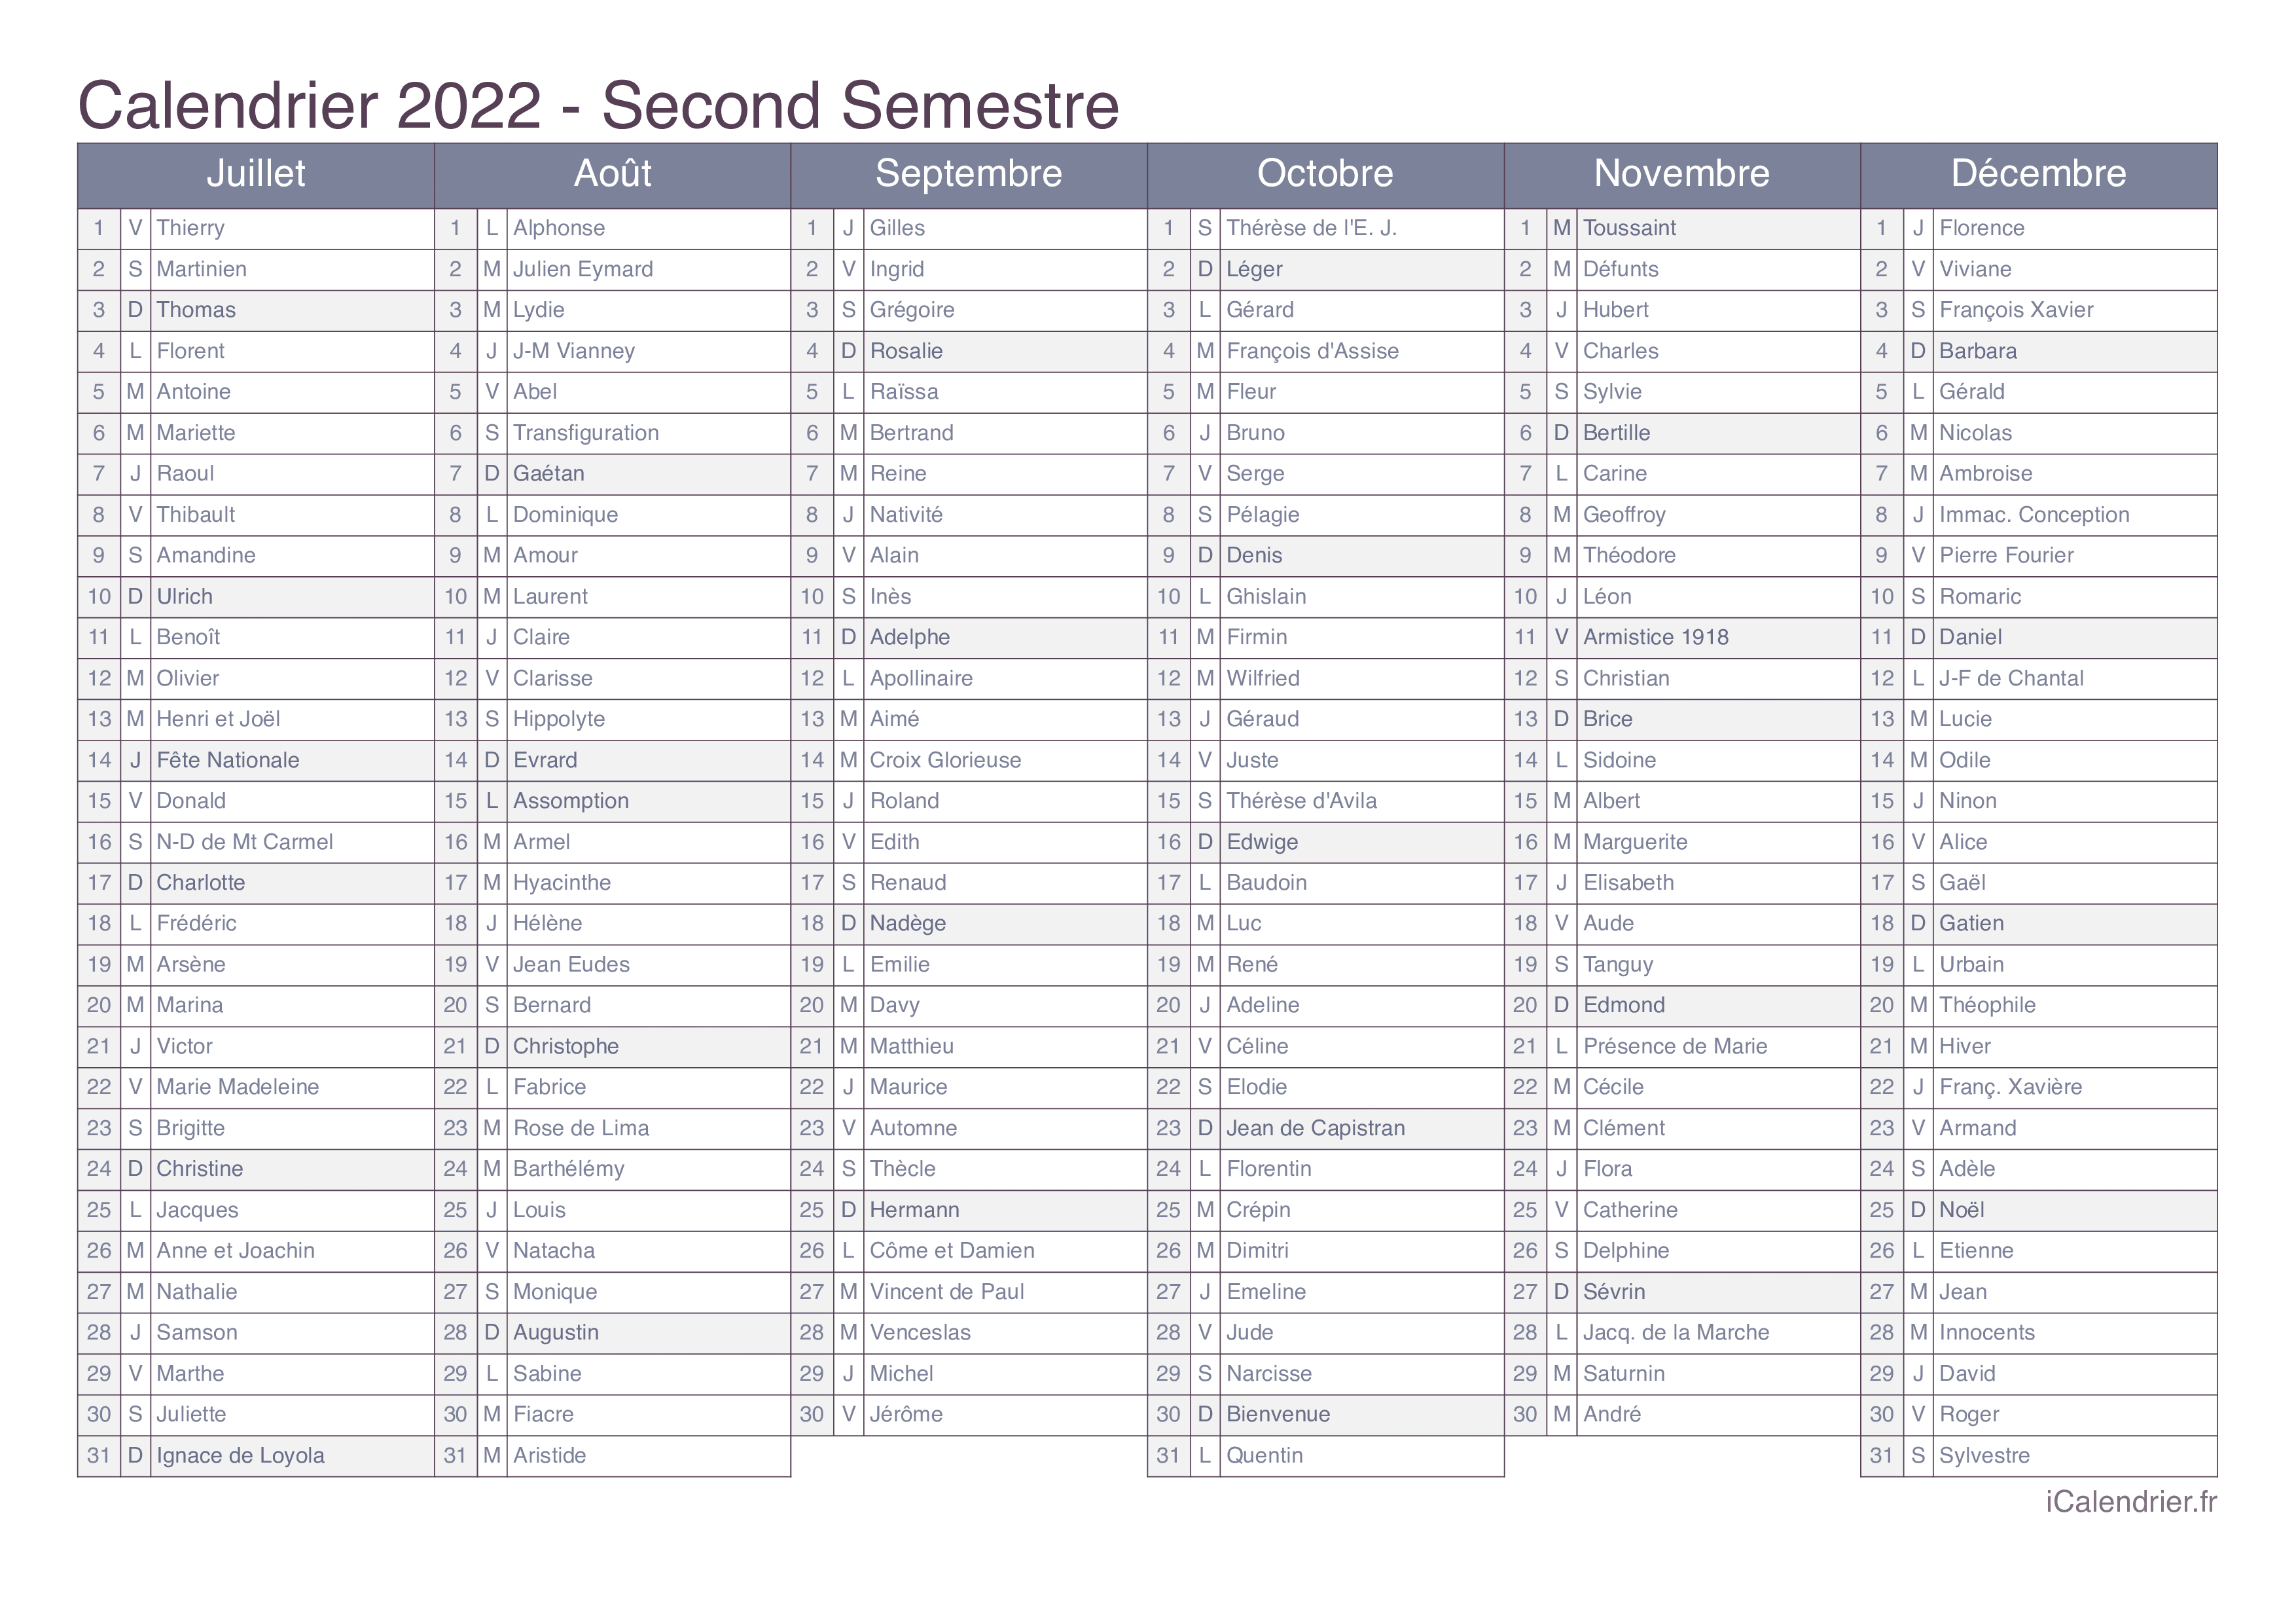 Calendrier 2022 Avec Les Fêtes Calendrier 2022 à imprimer PDF et Excel   iCalendrier